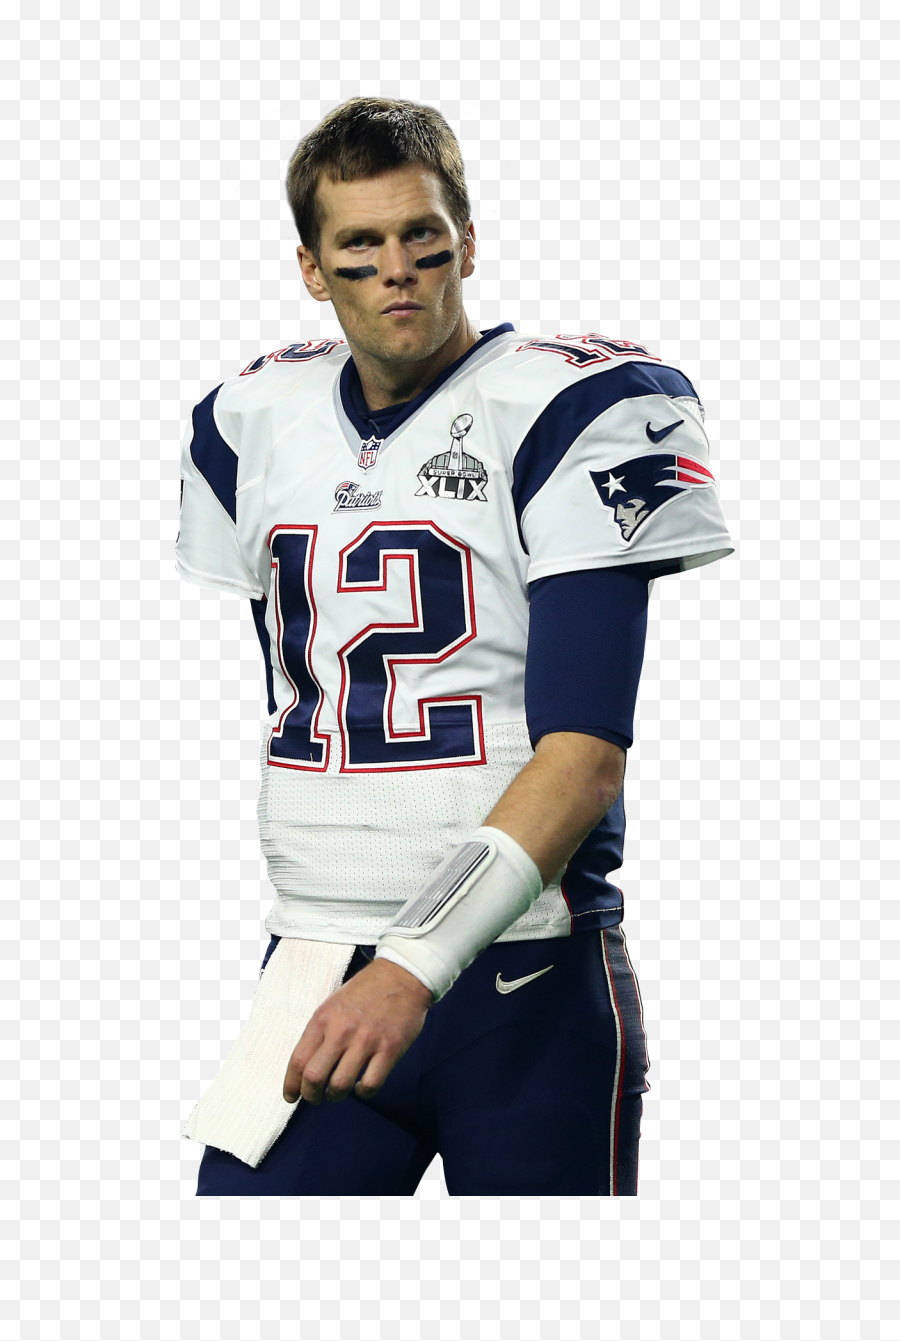 Tom Brady Png Transparent Image - Quarterback New England Patriots,Tom Brady Png